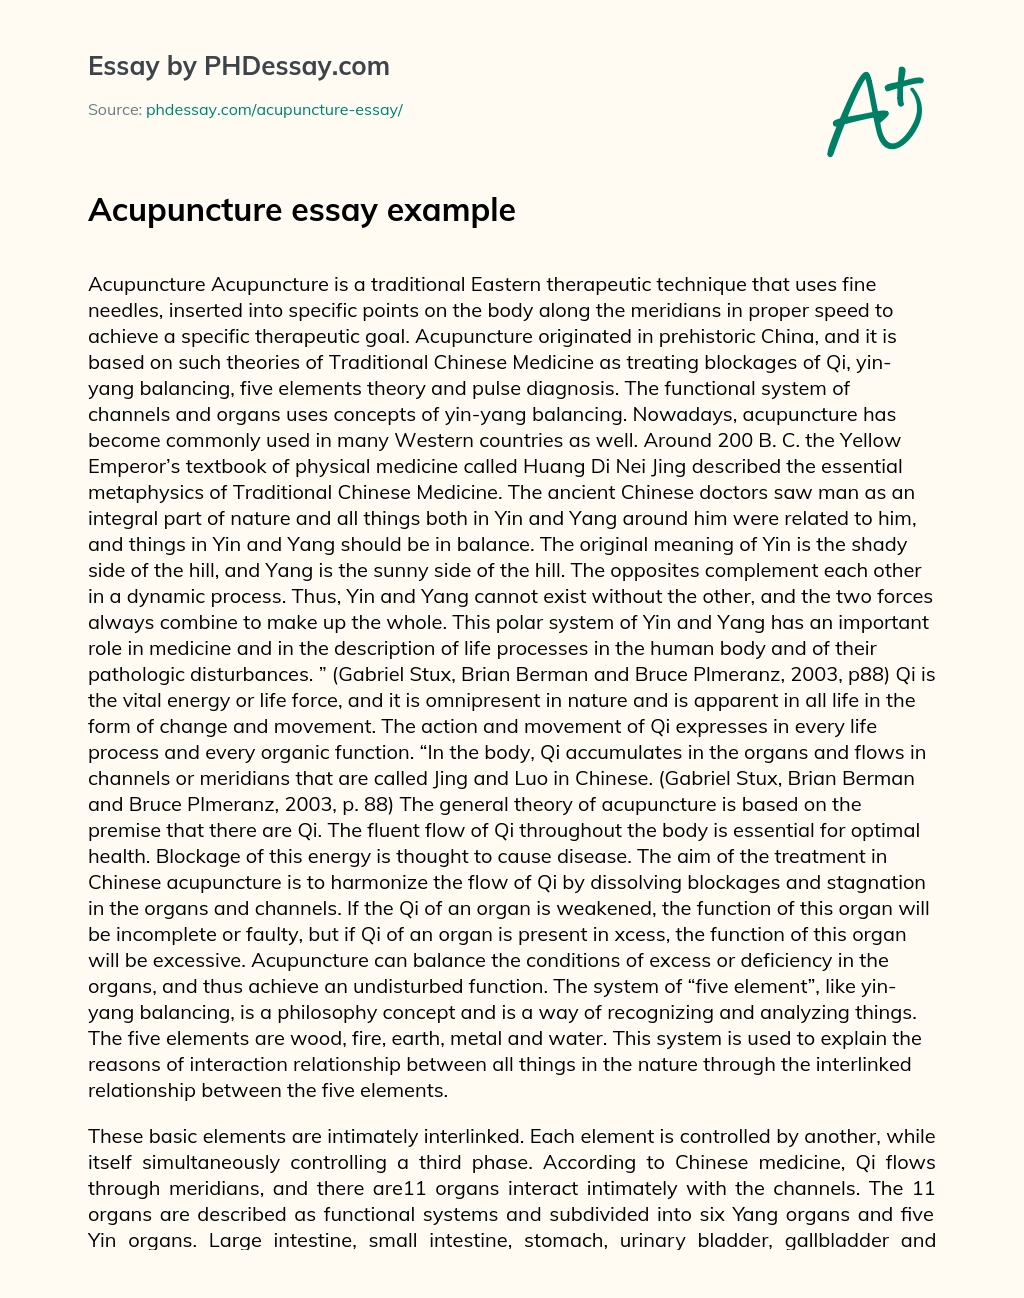 Acupuncture essay example essay